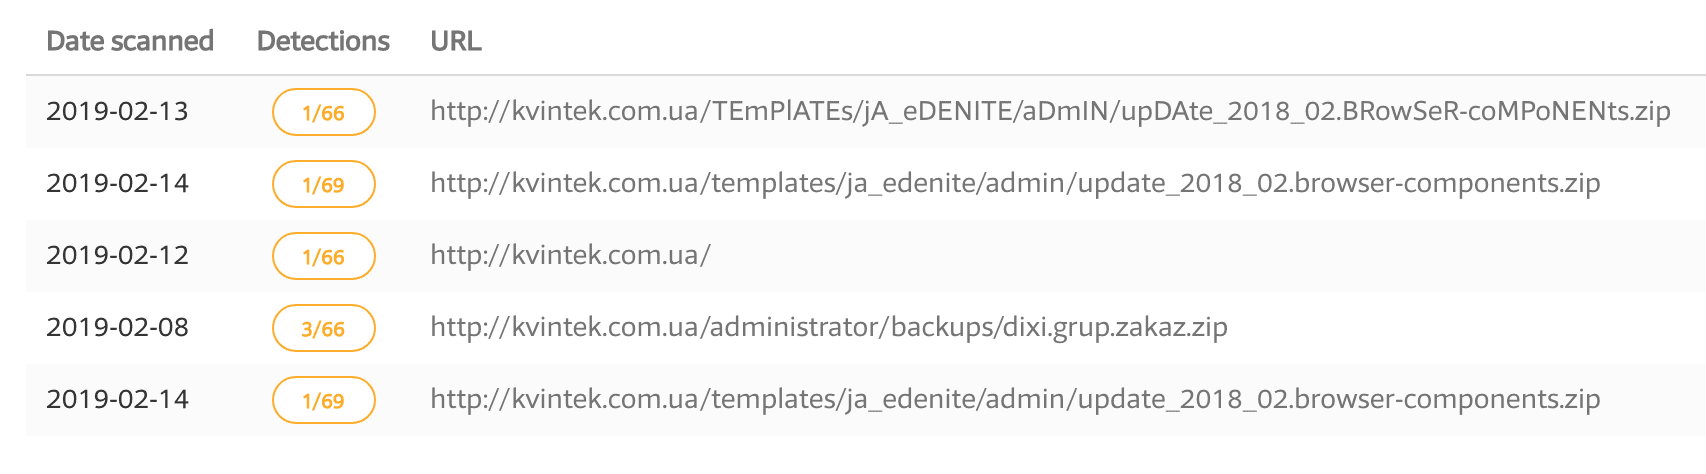 Suspicious URLs on kvintek[.]com.ua found this February.